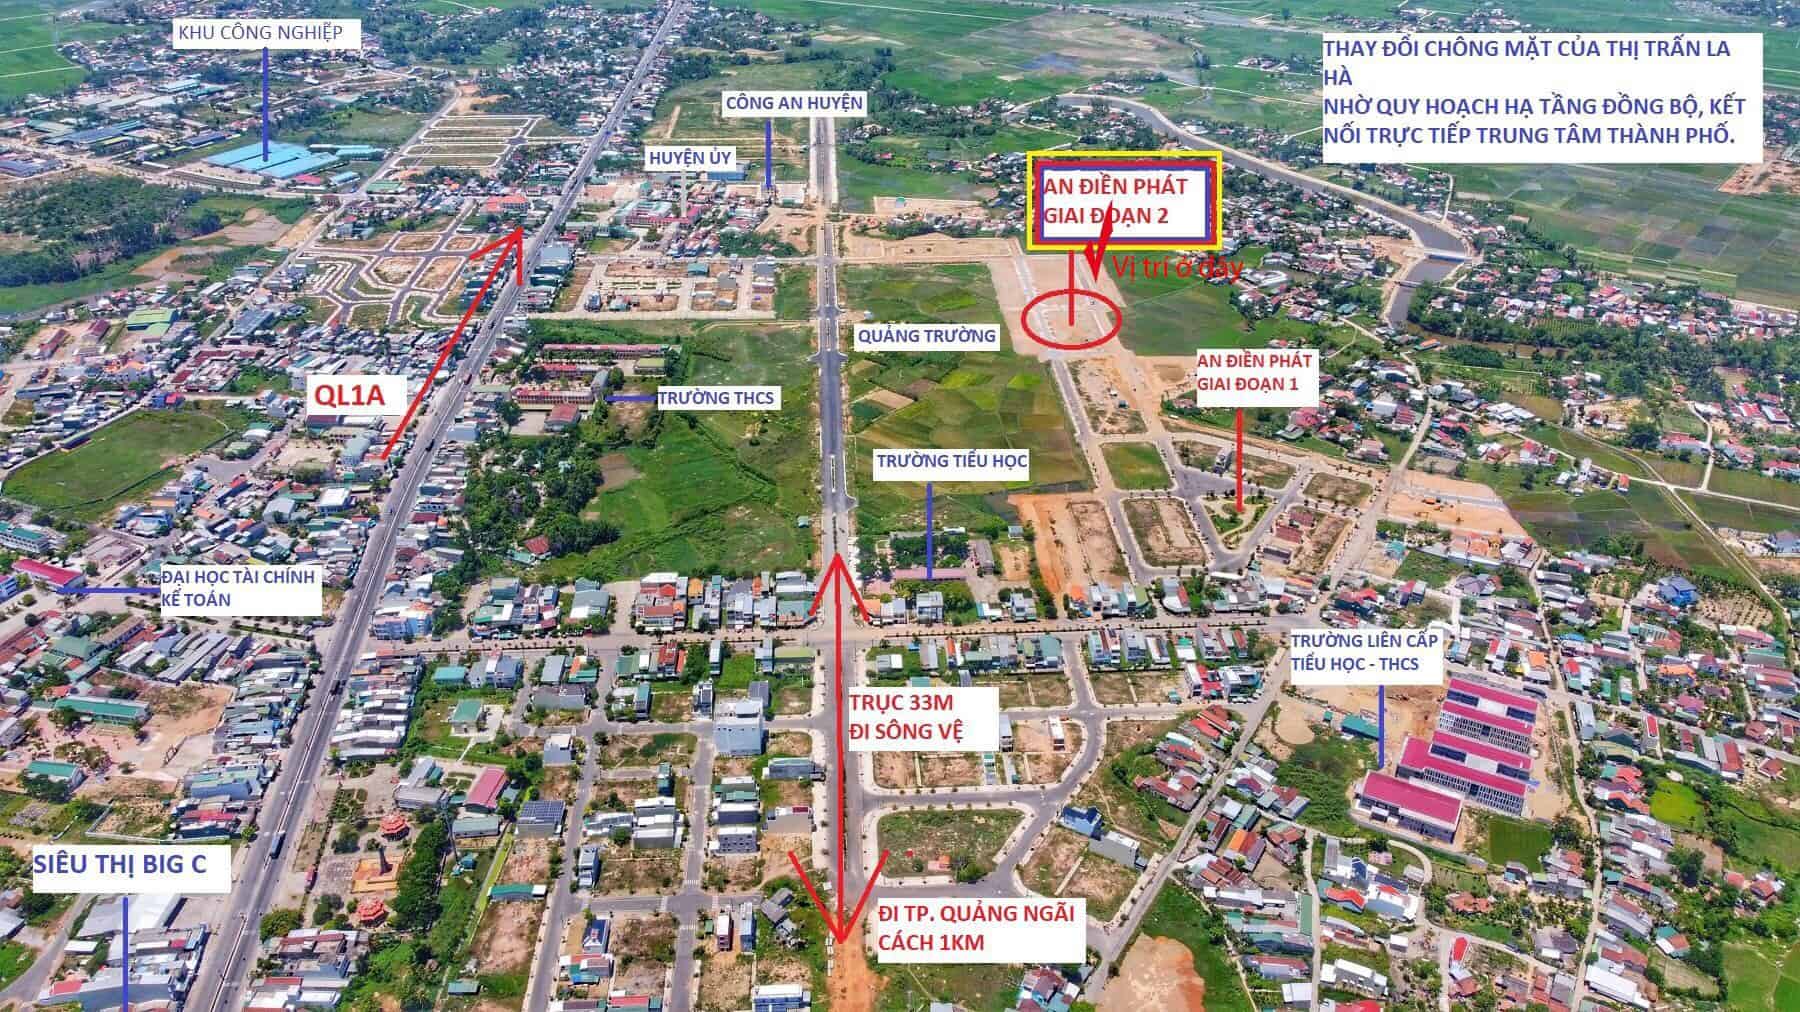 Đất nền dự án An Điền Phát thị trấn La Hà chỉ từ 10 triệu/m2